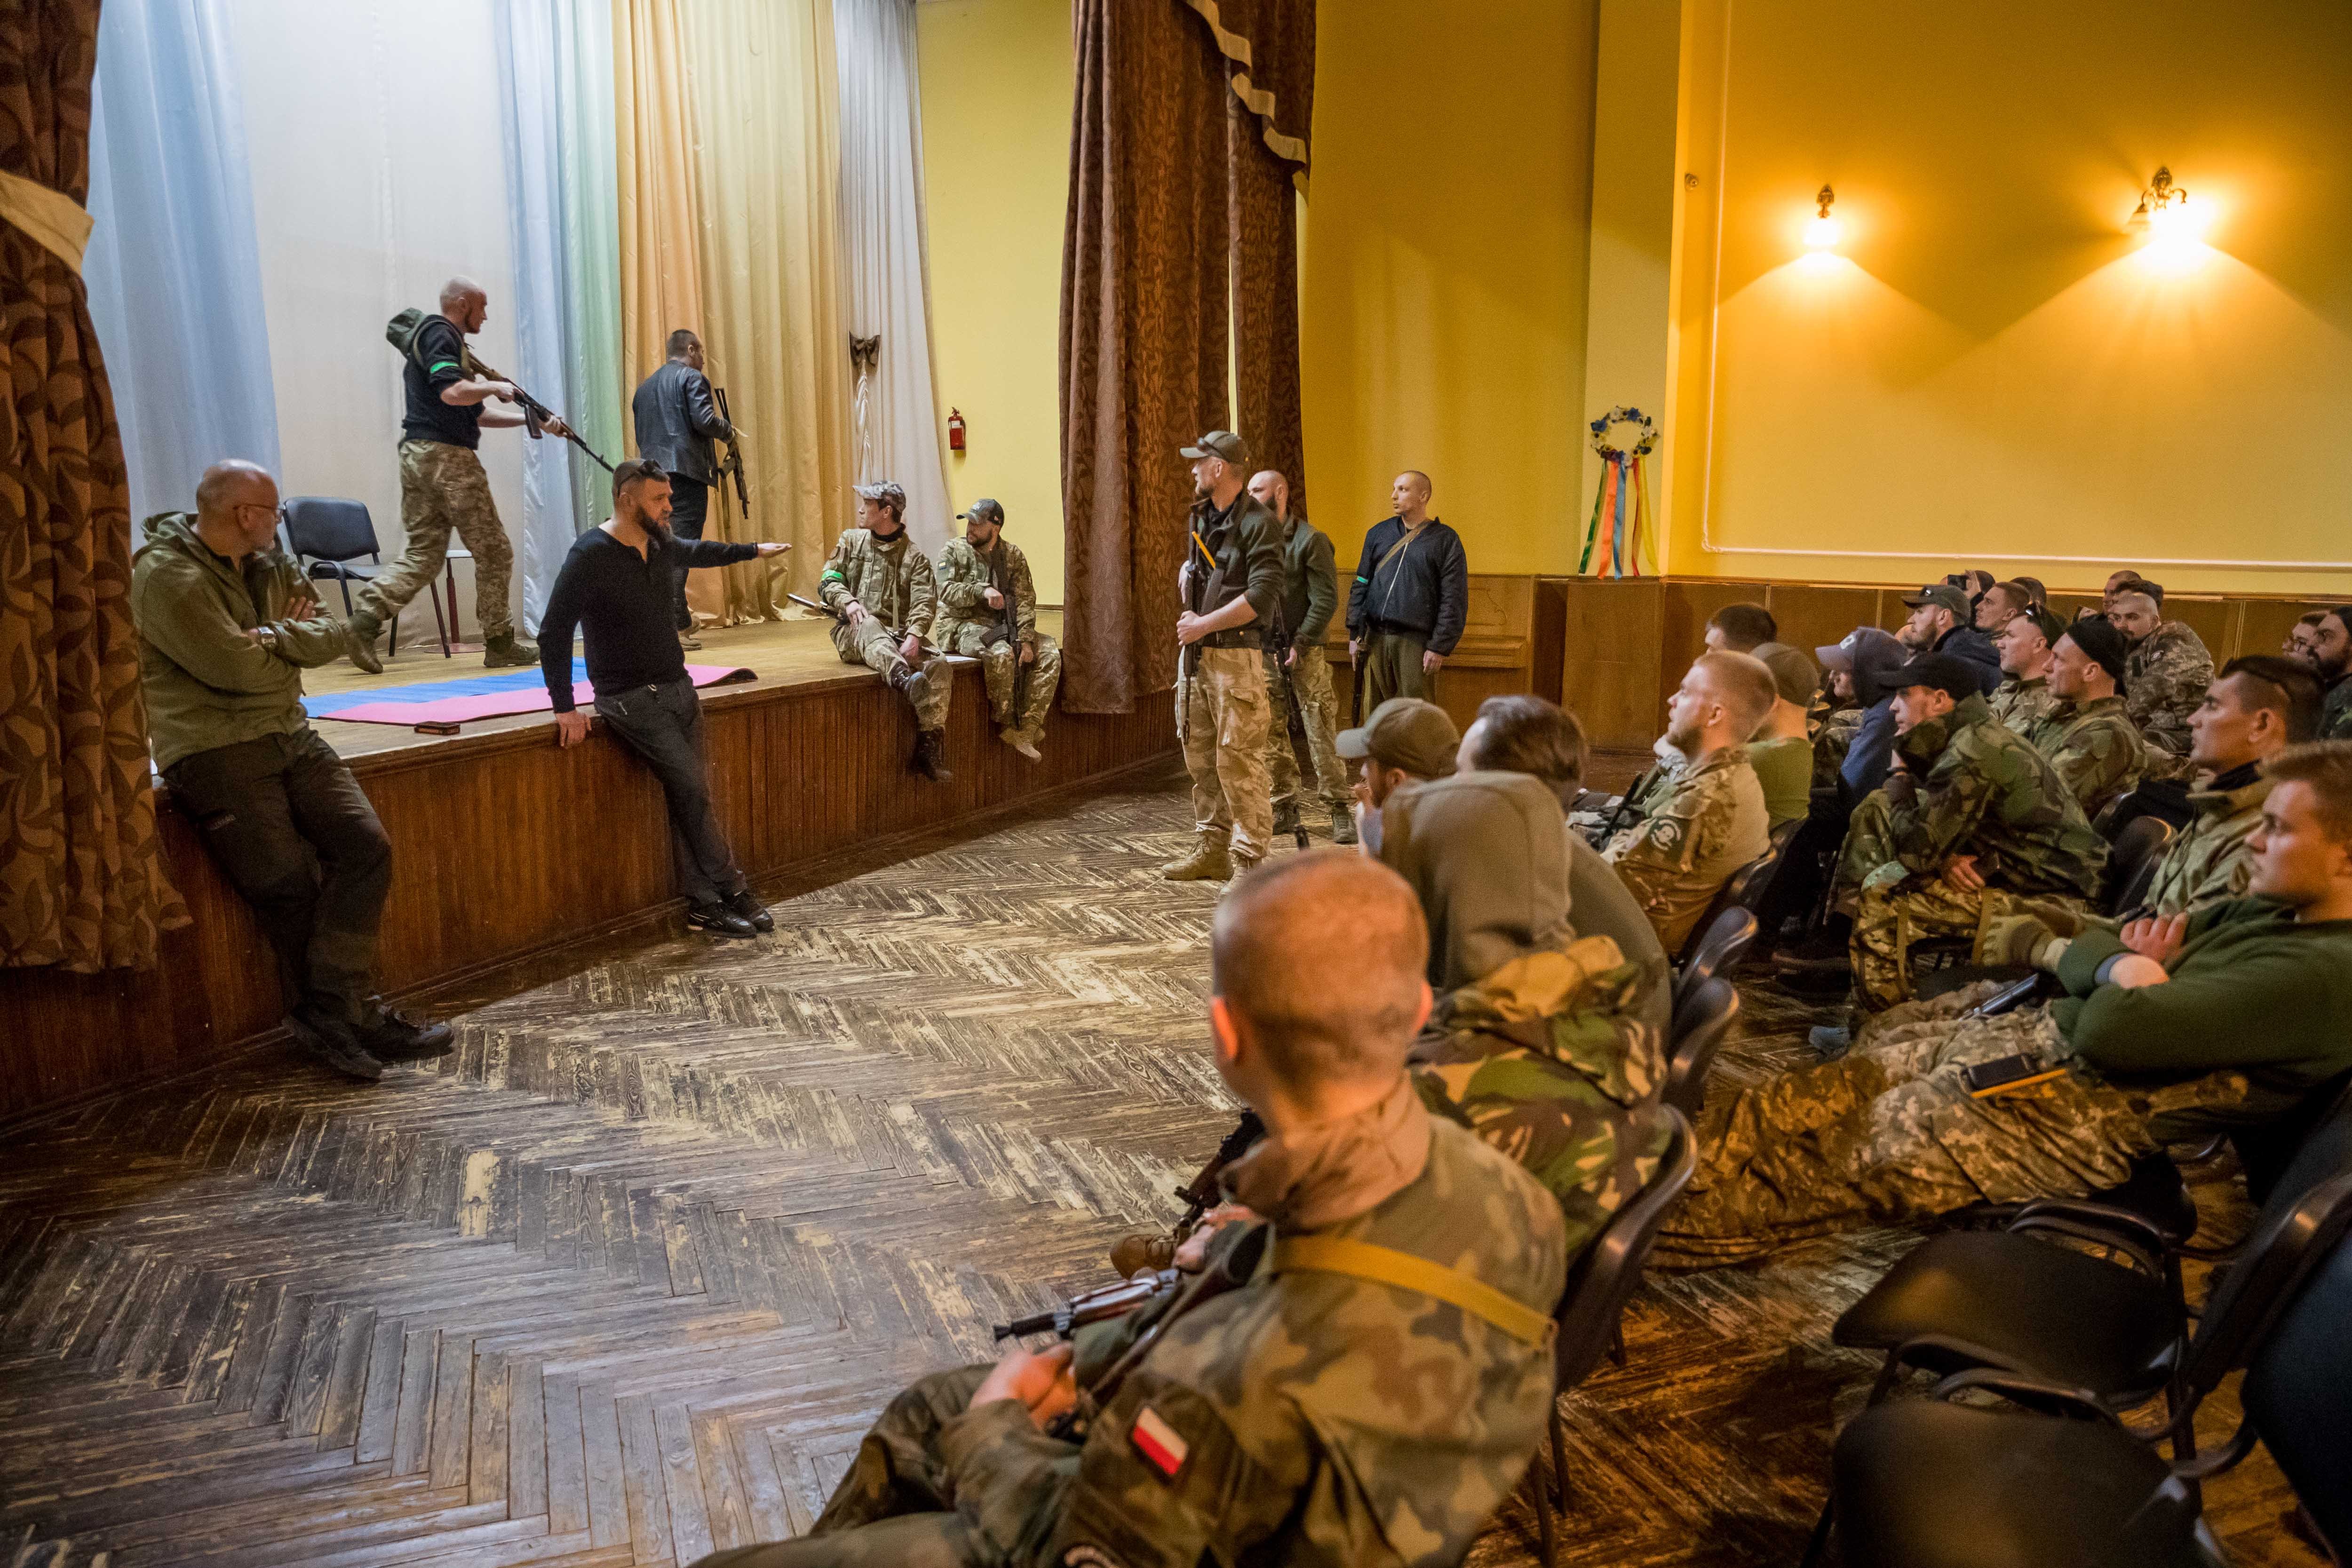 Els Estats Units entrenen tropes ucraïneses a les bases nord-americanes d'Europa